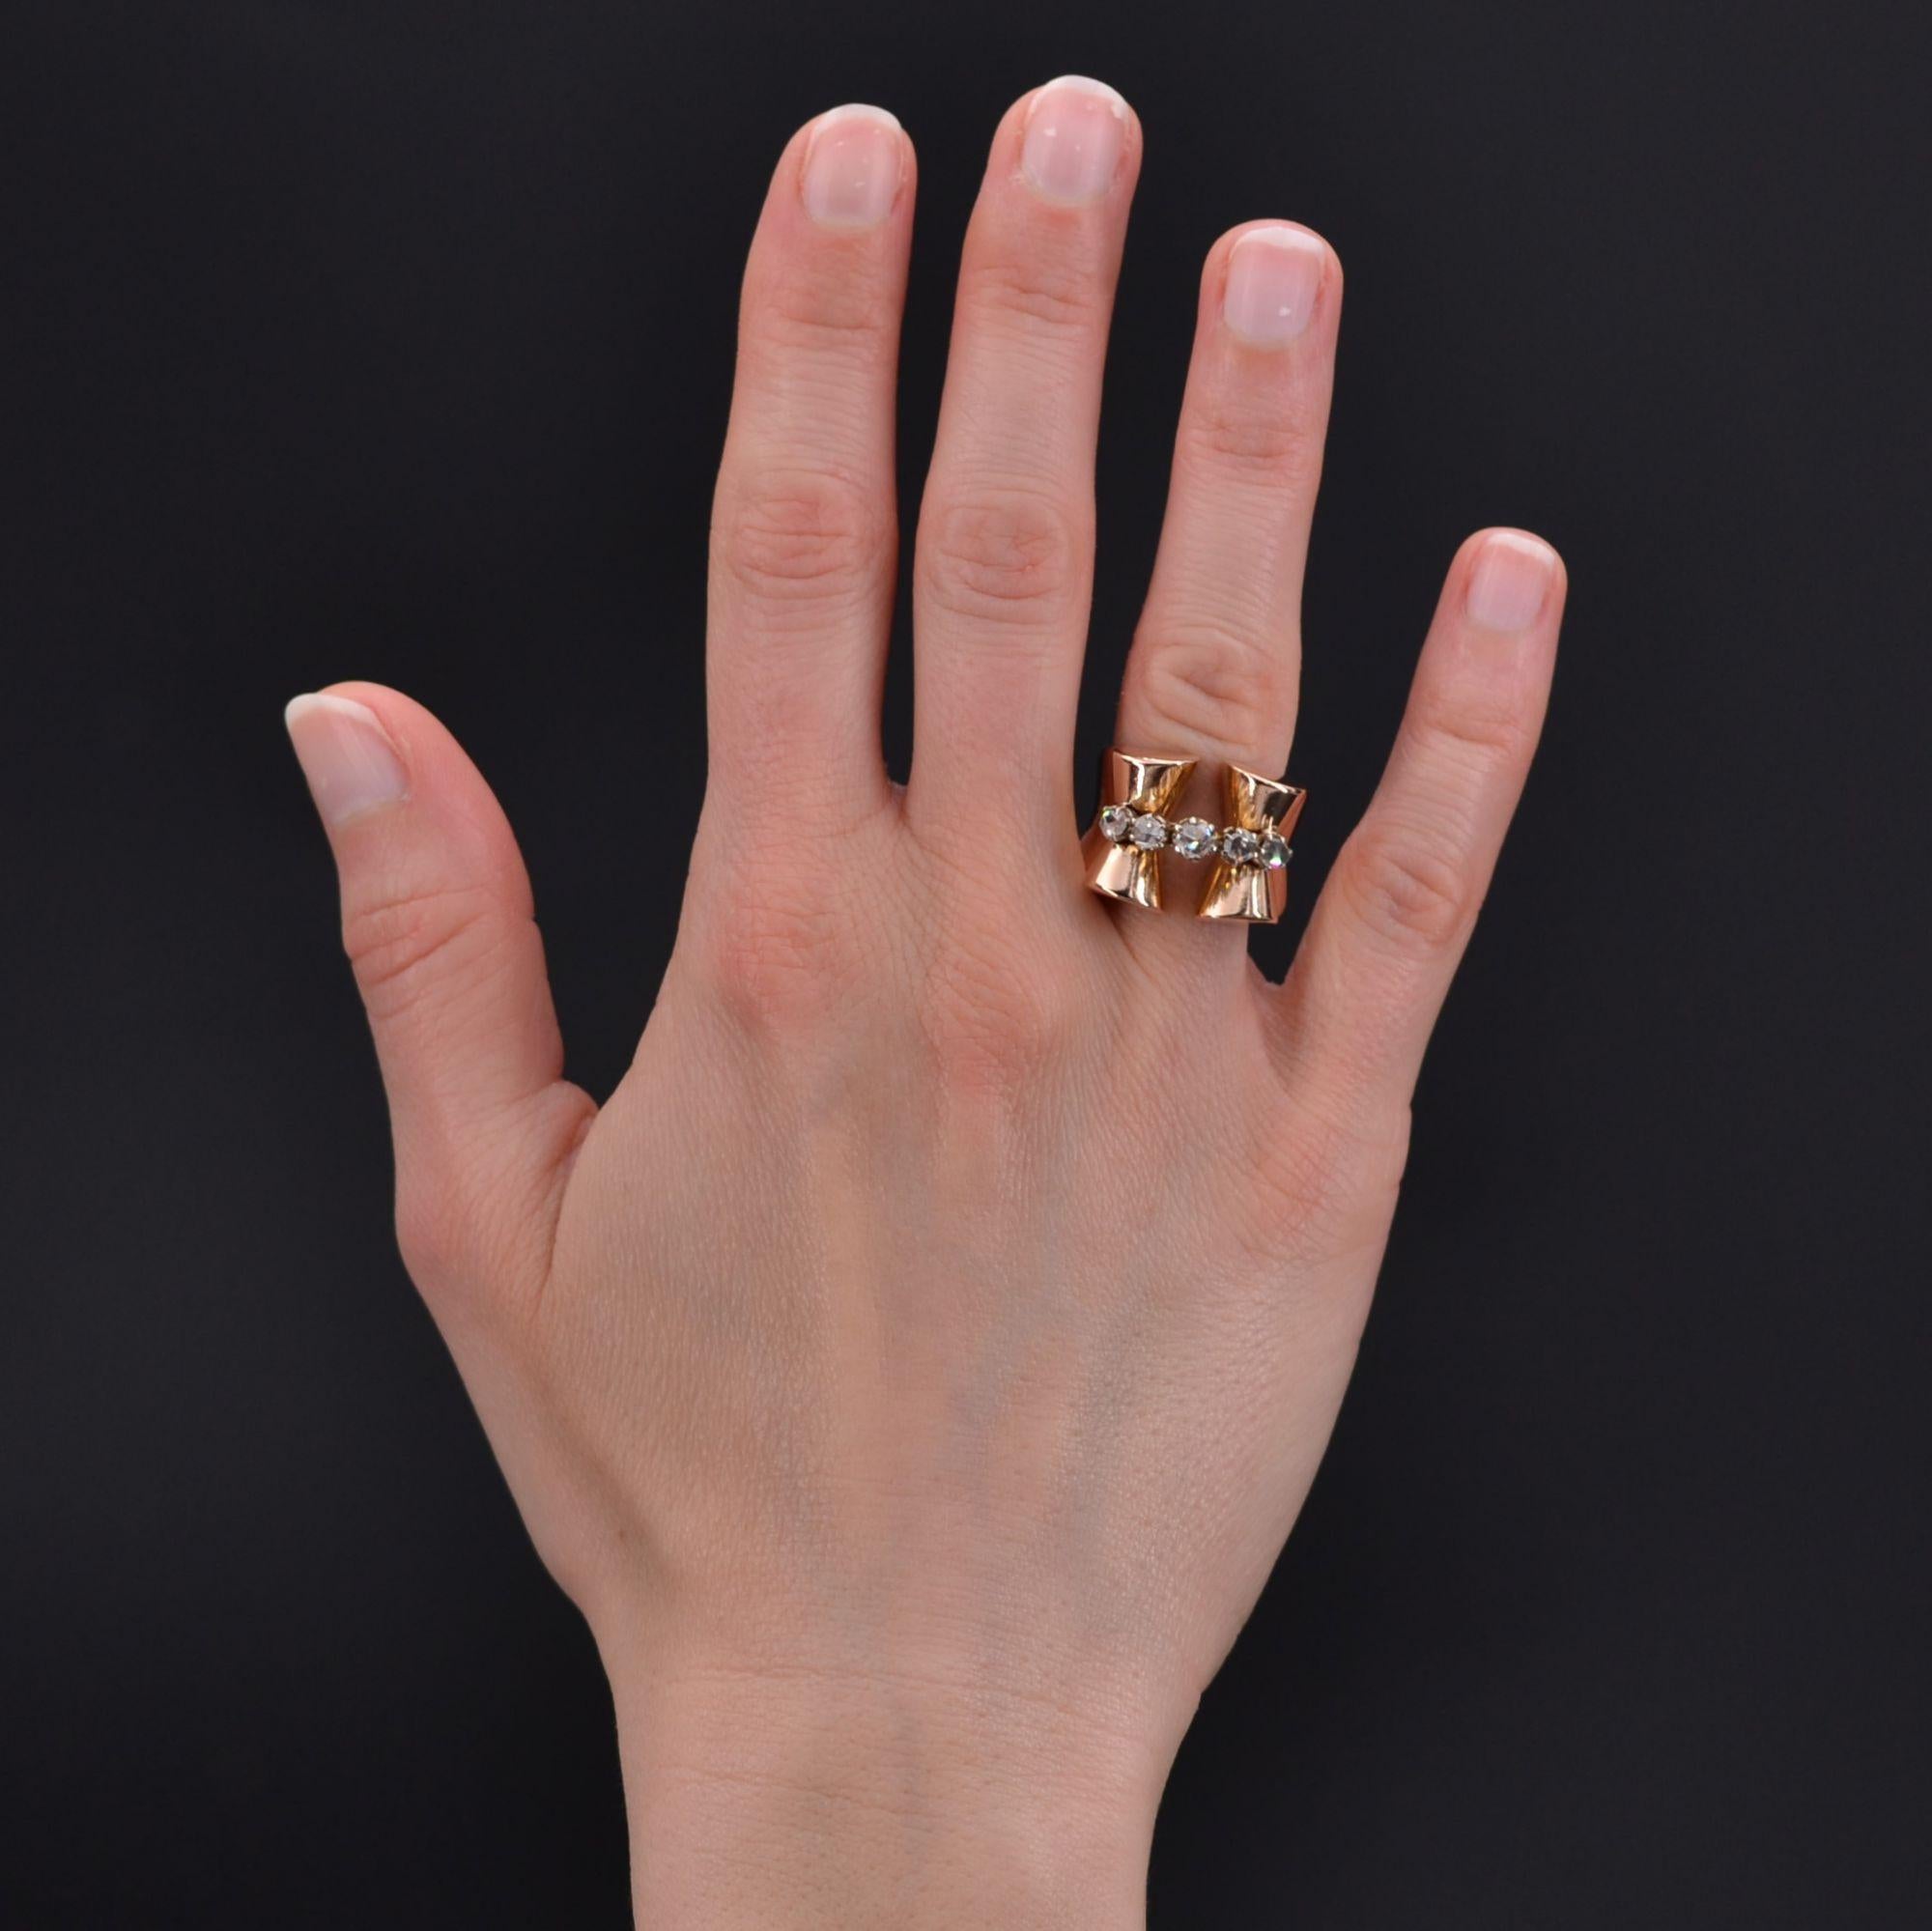 Ring aus 18 Karat Roségold, eigene Punzierung.
Der wichtige und breite Ring endet oben durch zwei Windungen wie ein Knoten, der in der Mitte durch eine Linie von Diamanten im Rosenschliff befestigt ist.
Gesamtgewicht der Diamanten: ca. 0,42